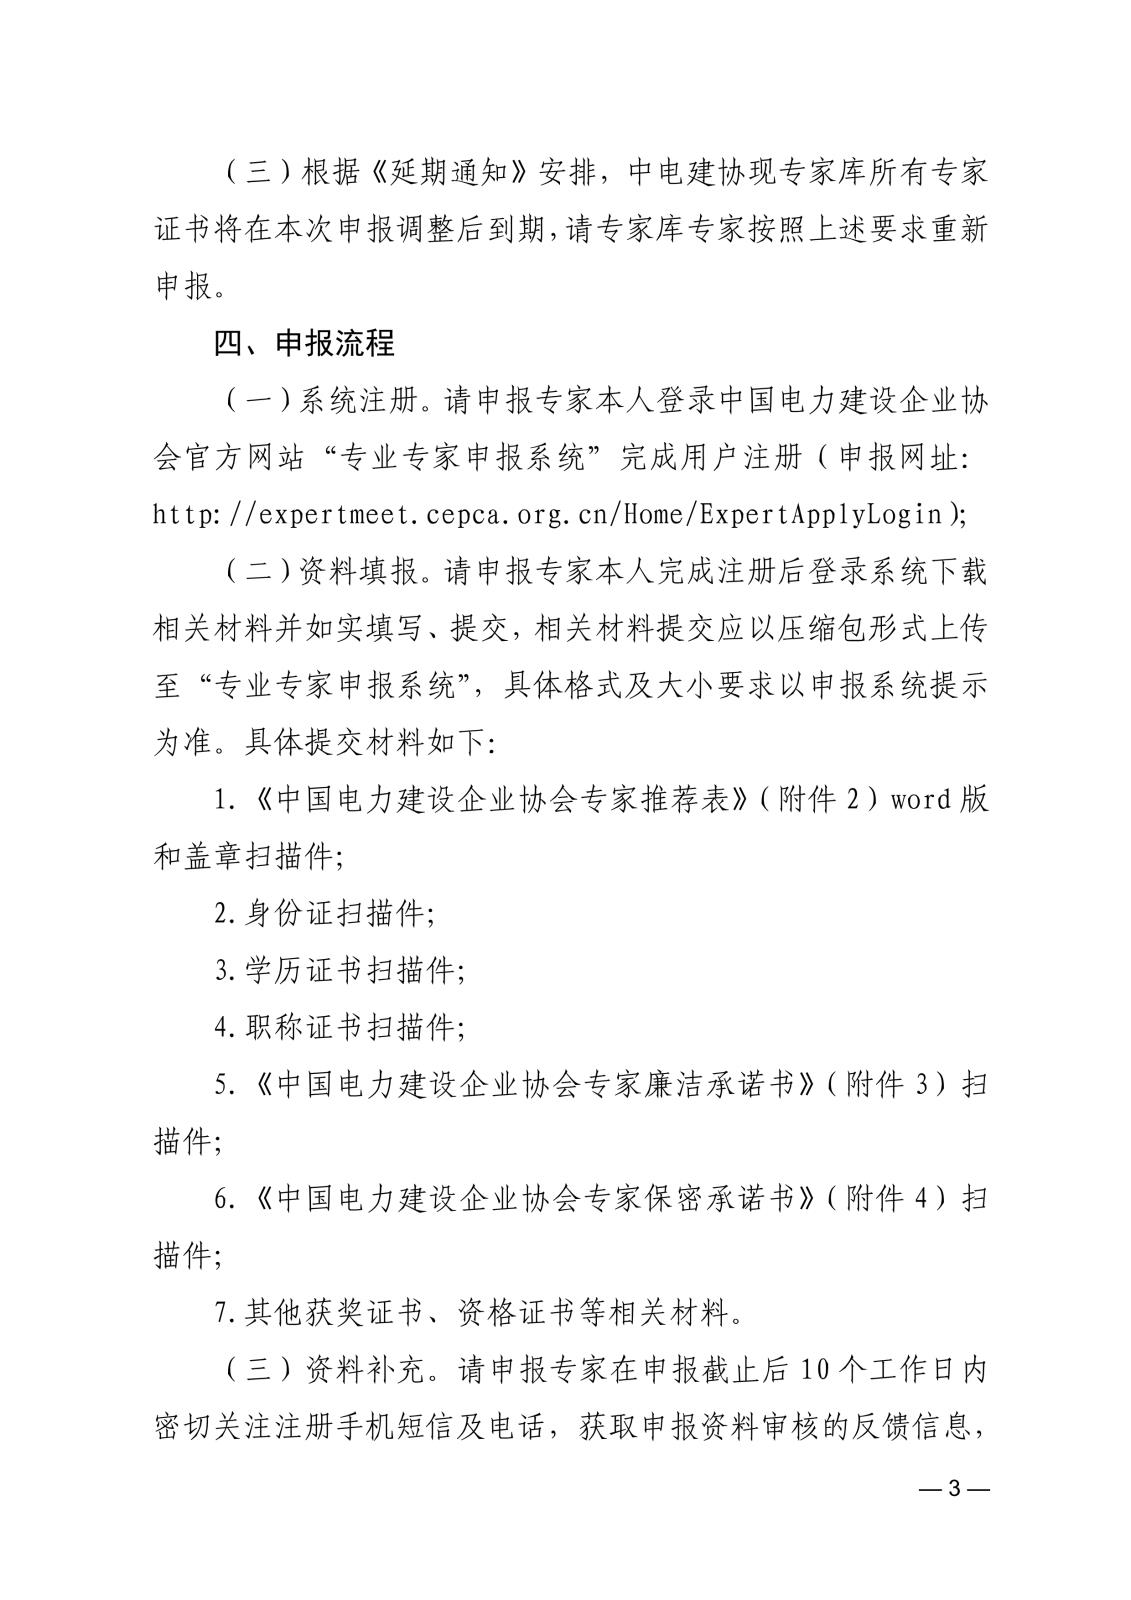 关于申报中国电力建设企业协会专业专家的通知_3.jpg